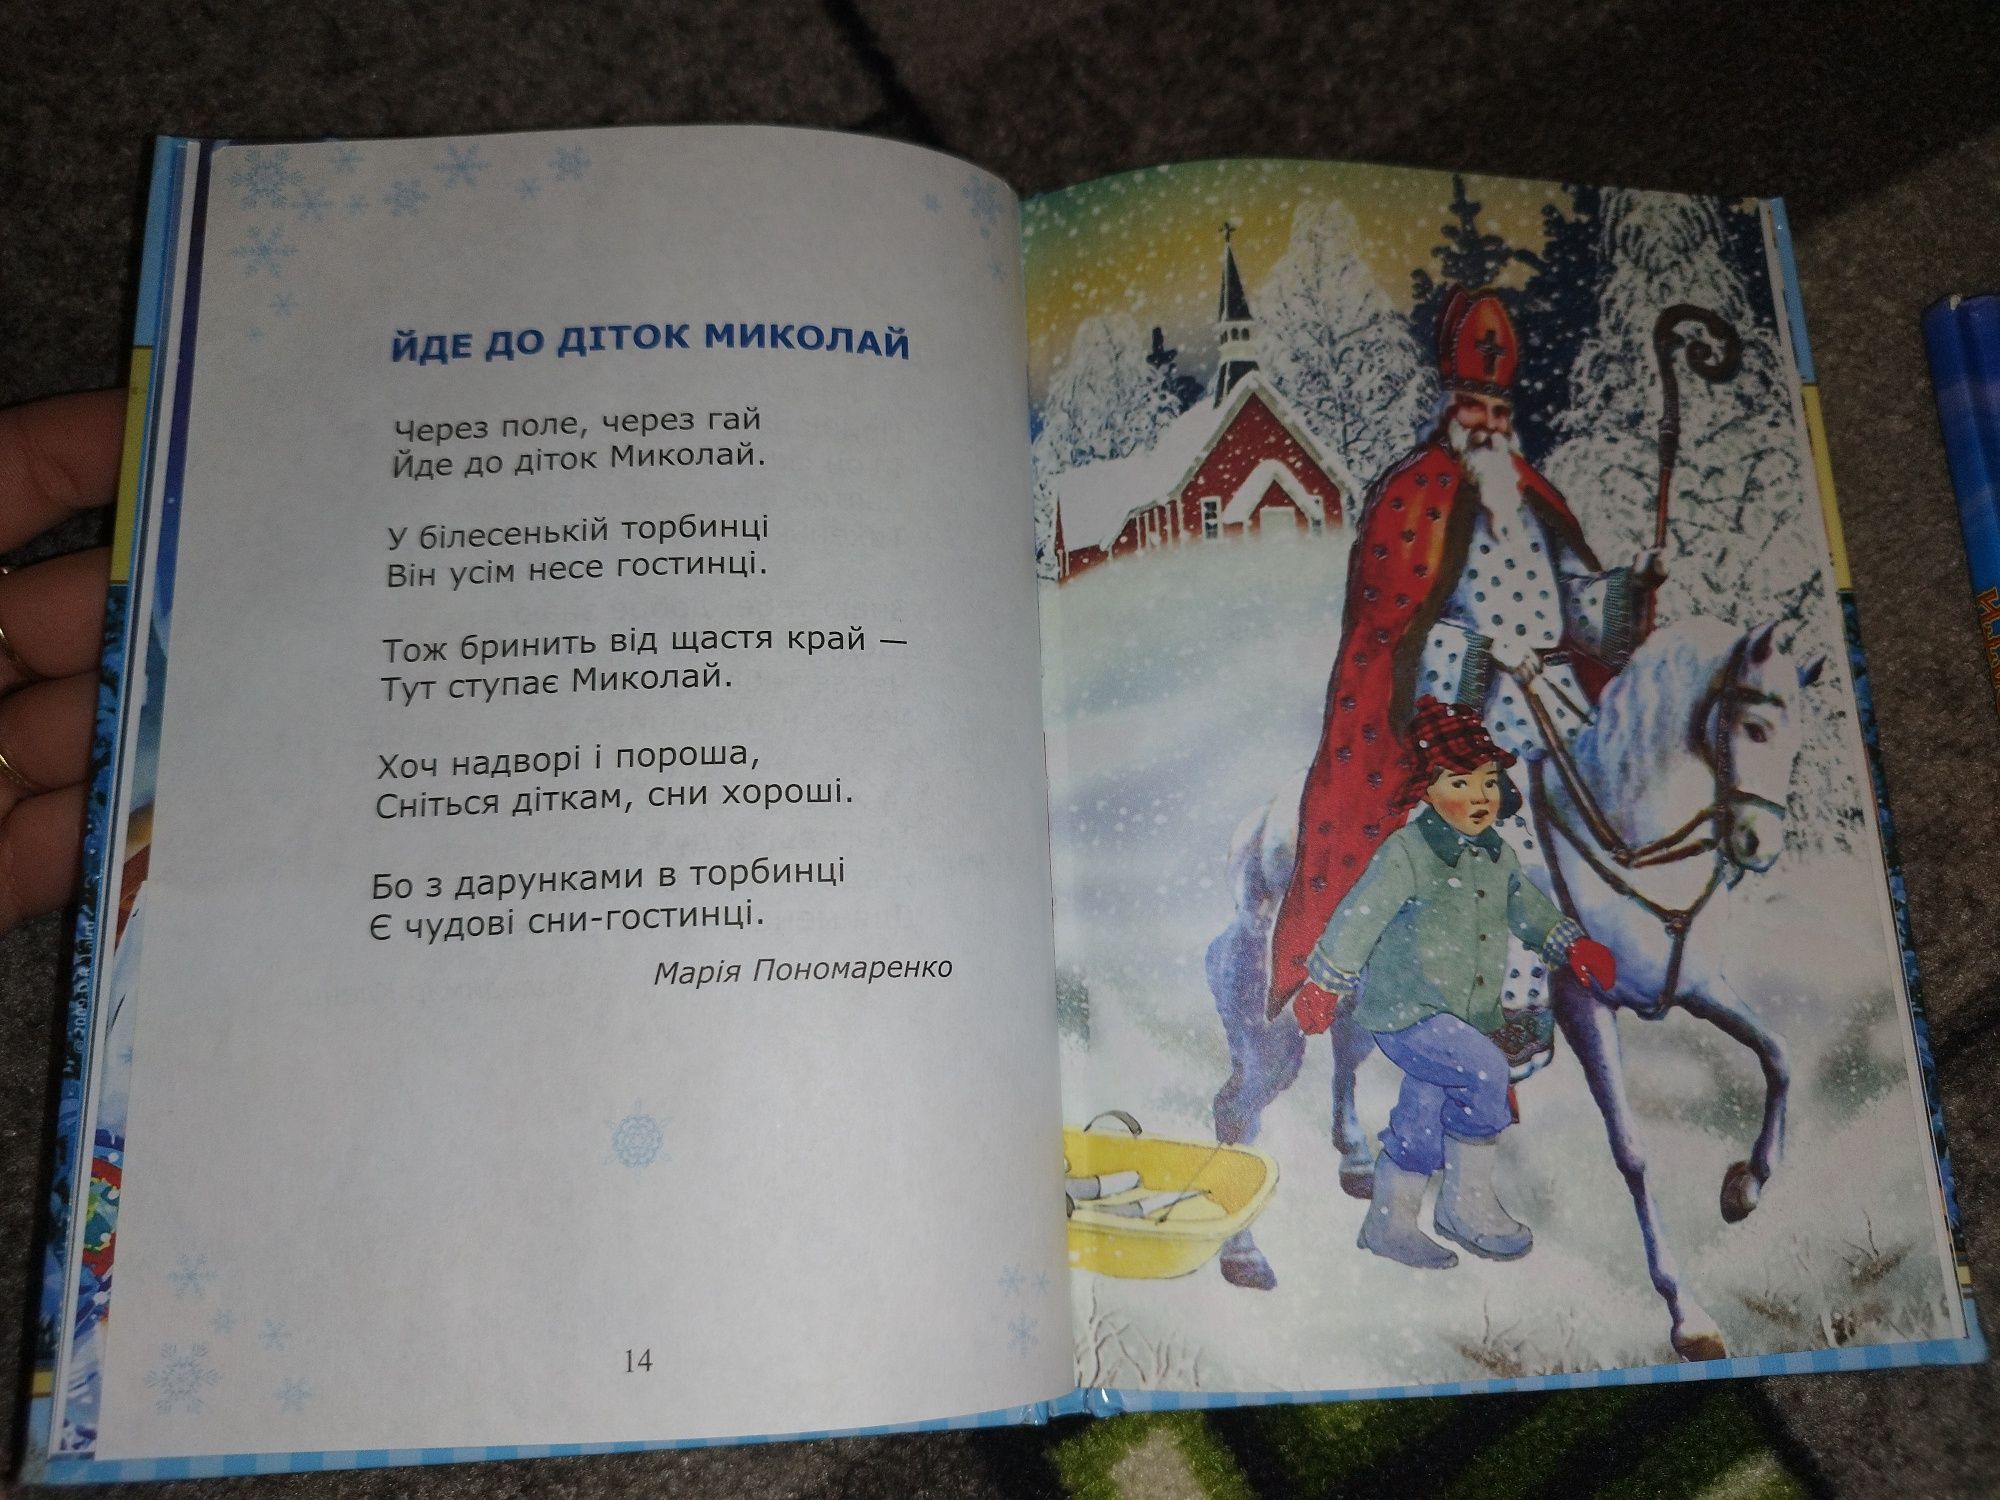 Дитяча книга "Йде до діток Миколай"